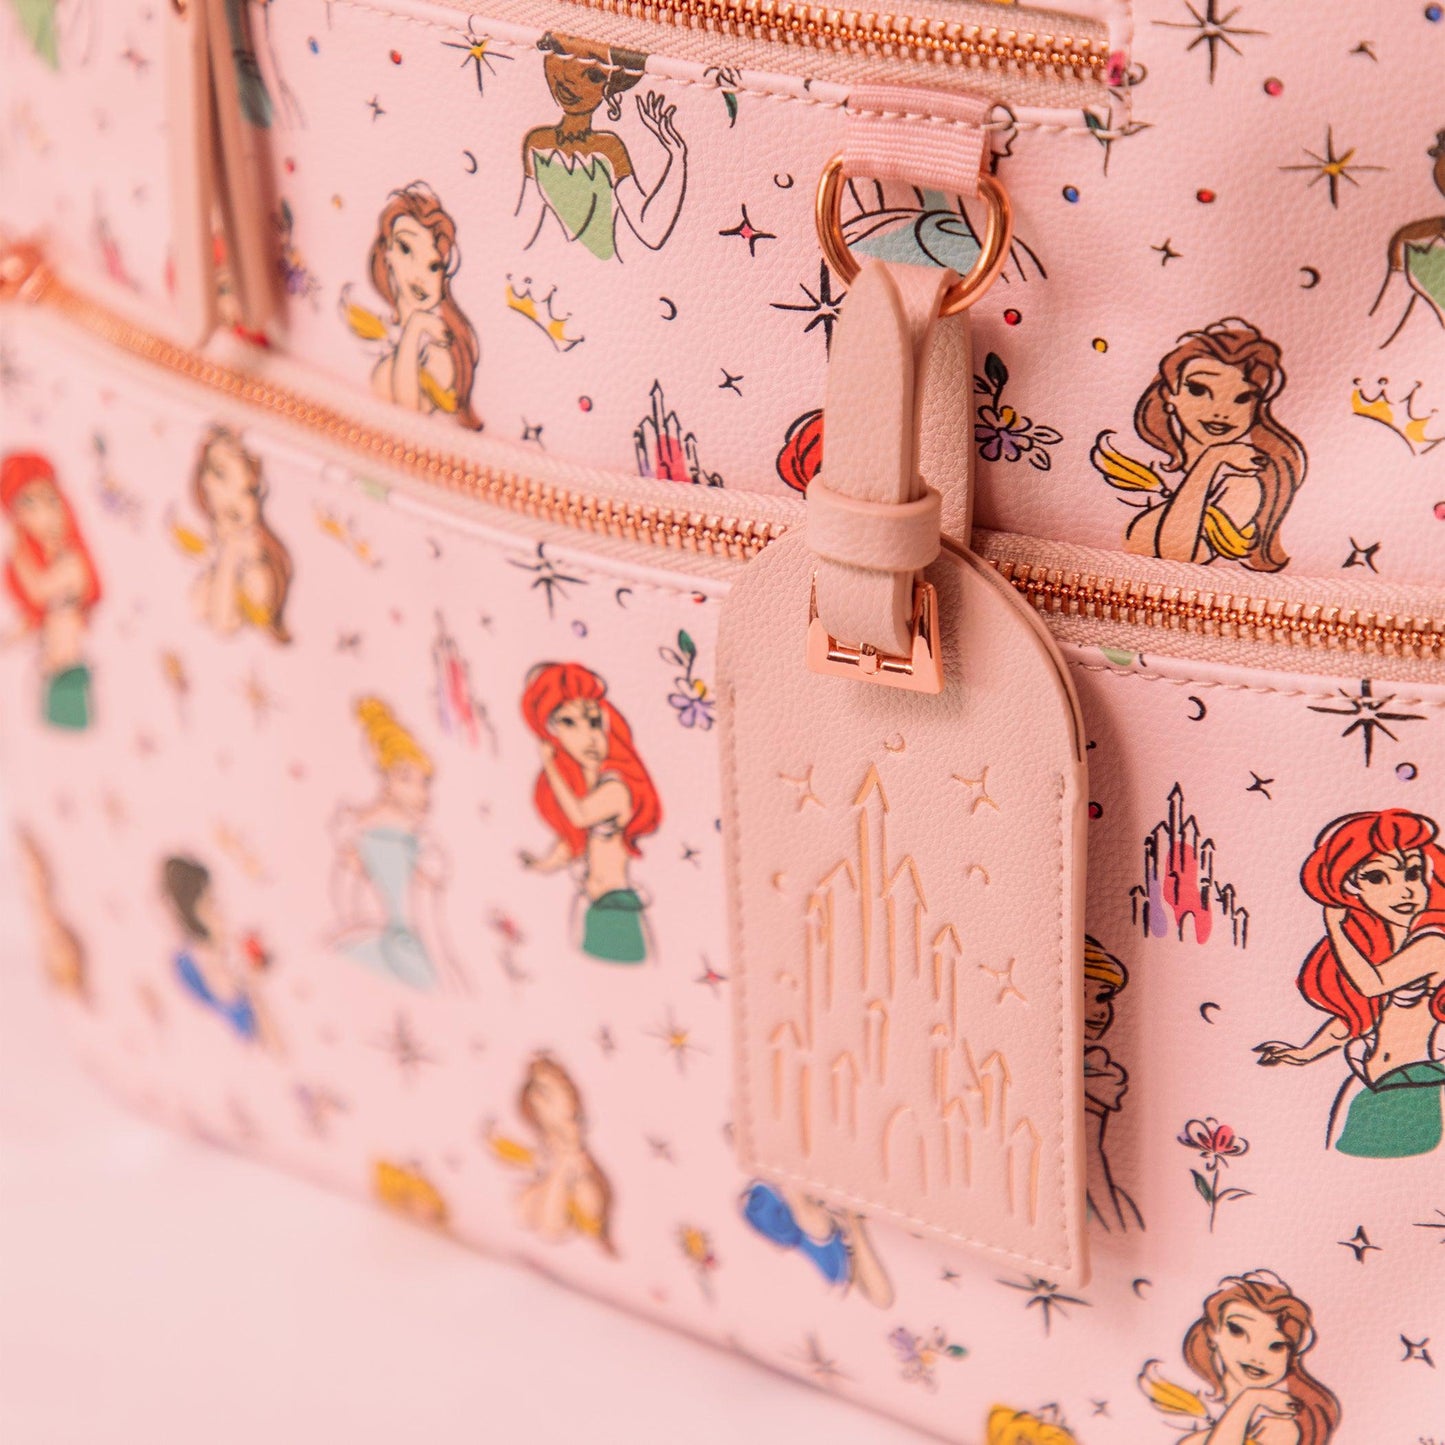 Petunia Pickle Bottom Ace Backpack Diaper Bag in Disney Princess